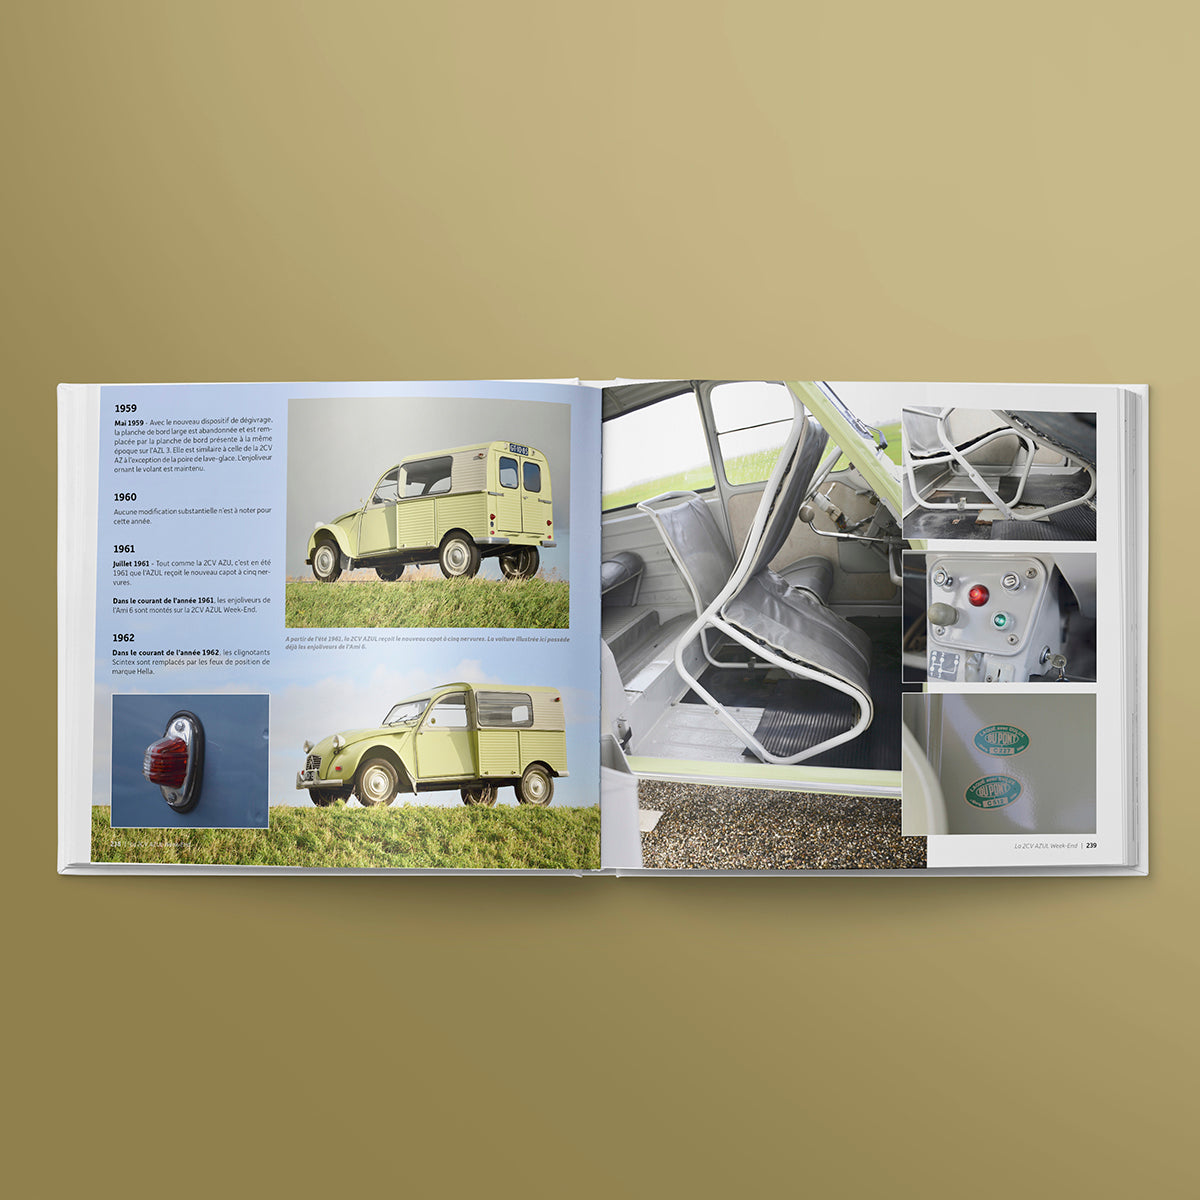 L'encyclopédie des Citroën 2CV belges